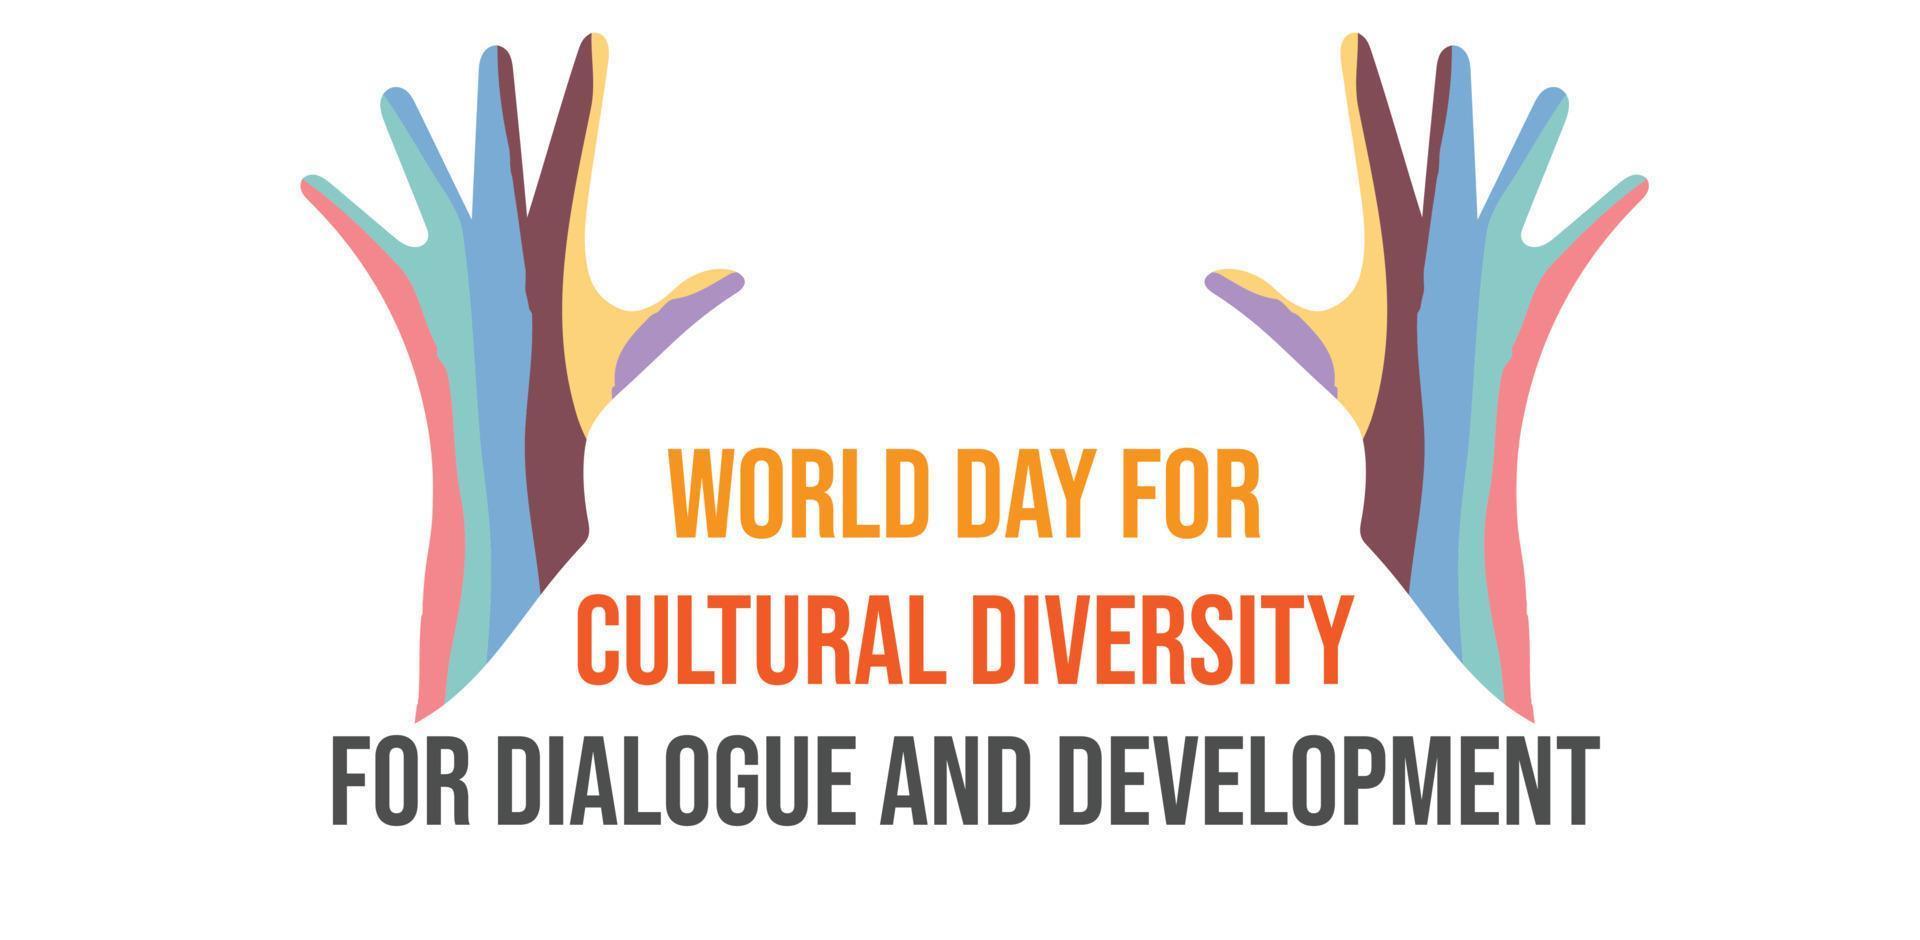 monde journée pour culturel la diversité pour dialogue et développement. modèle pour arrière-plan, bannière, carte, affiche. vecteur illustration.